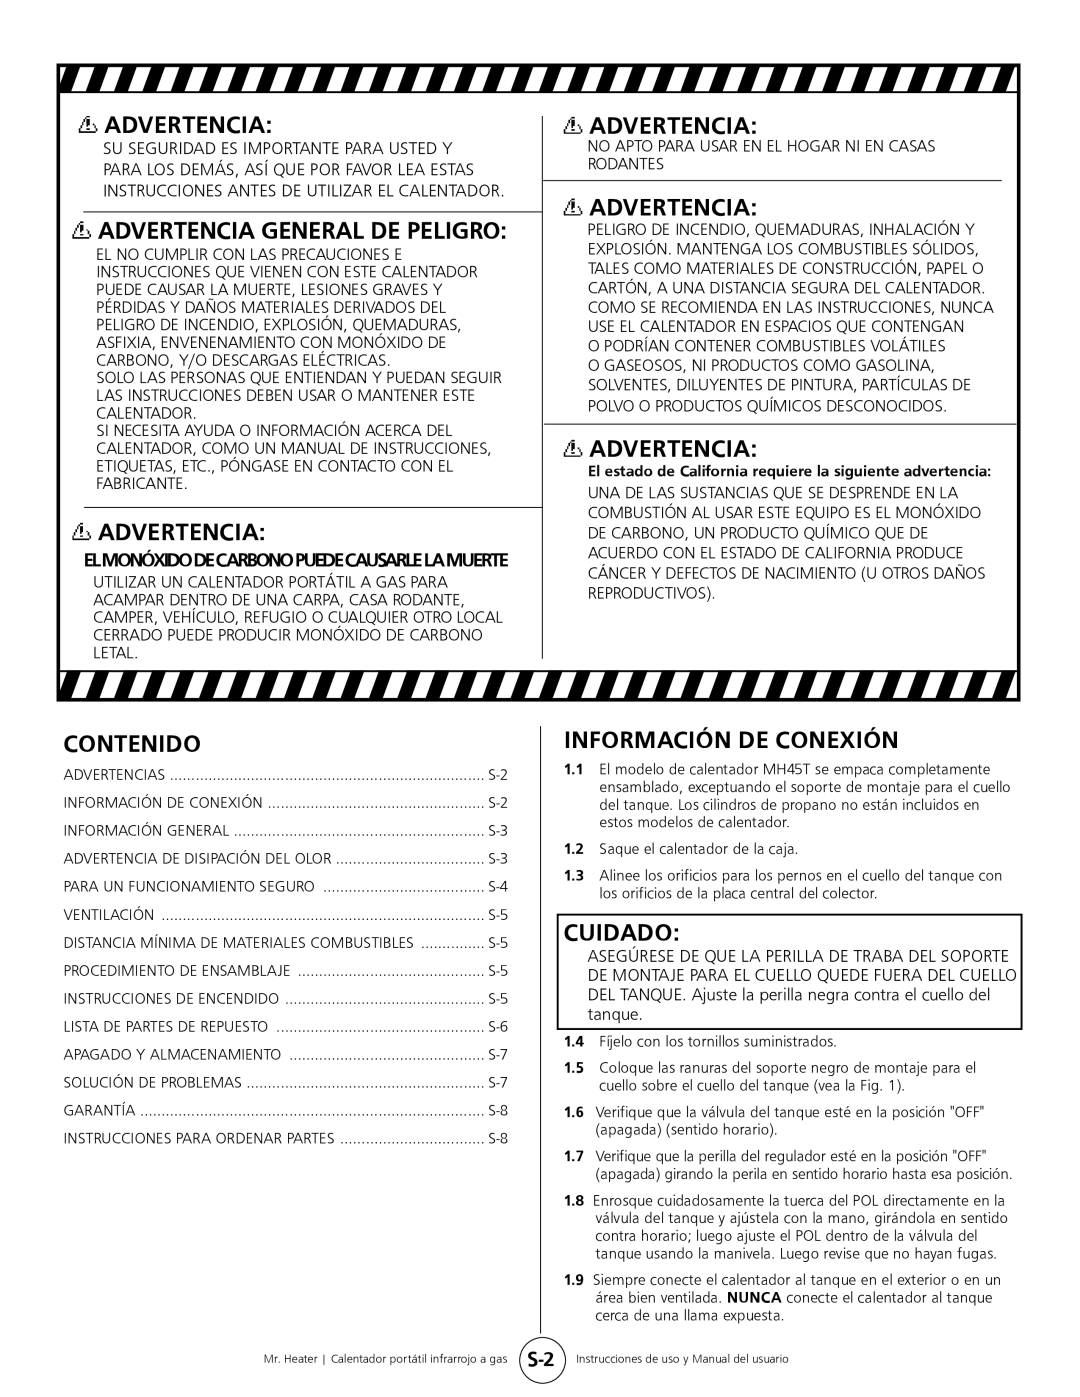 Mr. Heater MH45T owner manual Contenido, Información De Conexión, Cuidado, Advertencia General De Peligro 